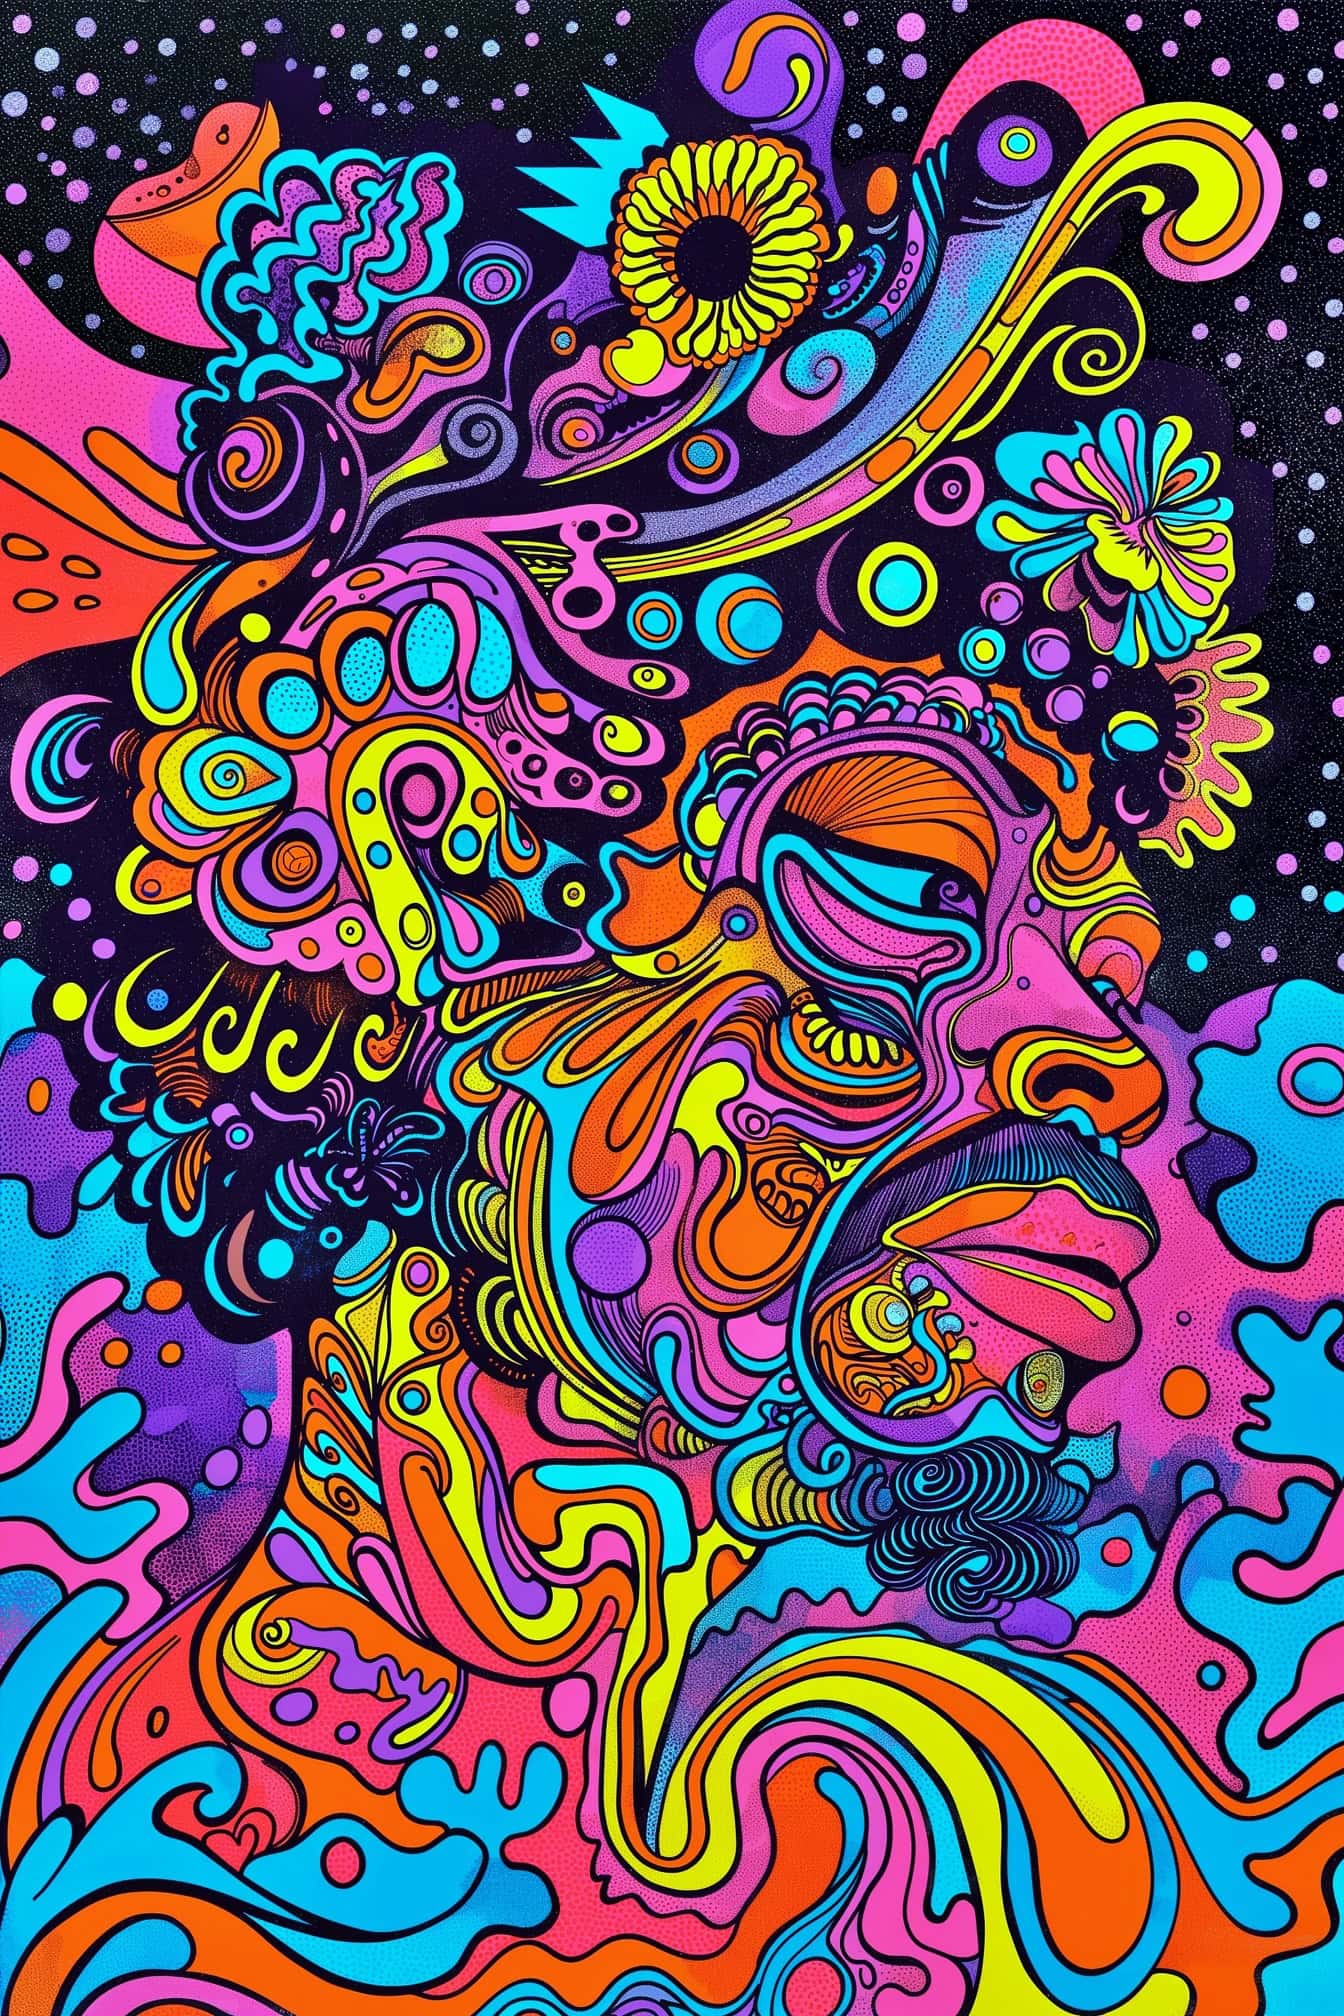 Opera d’arte psichedelica astratta colorata di un uomo in stile pop art